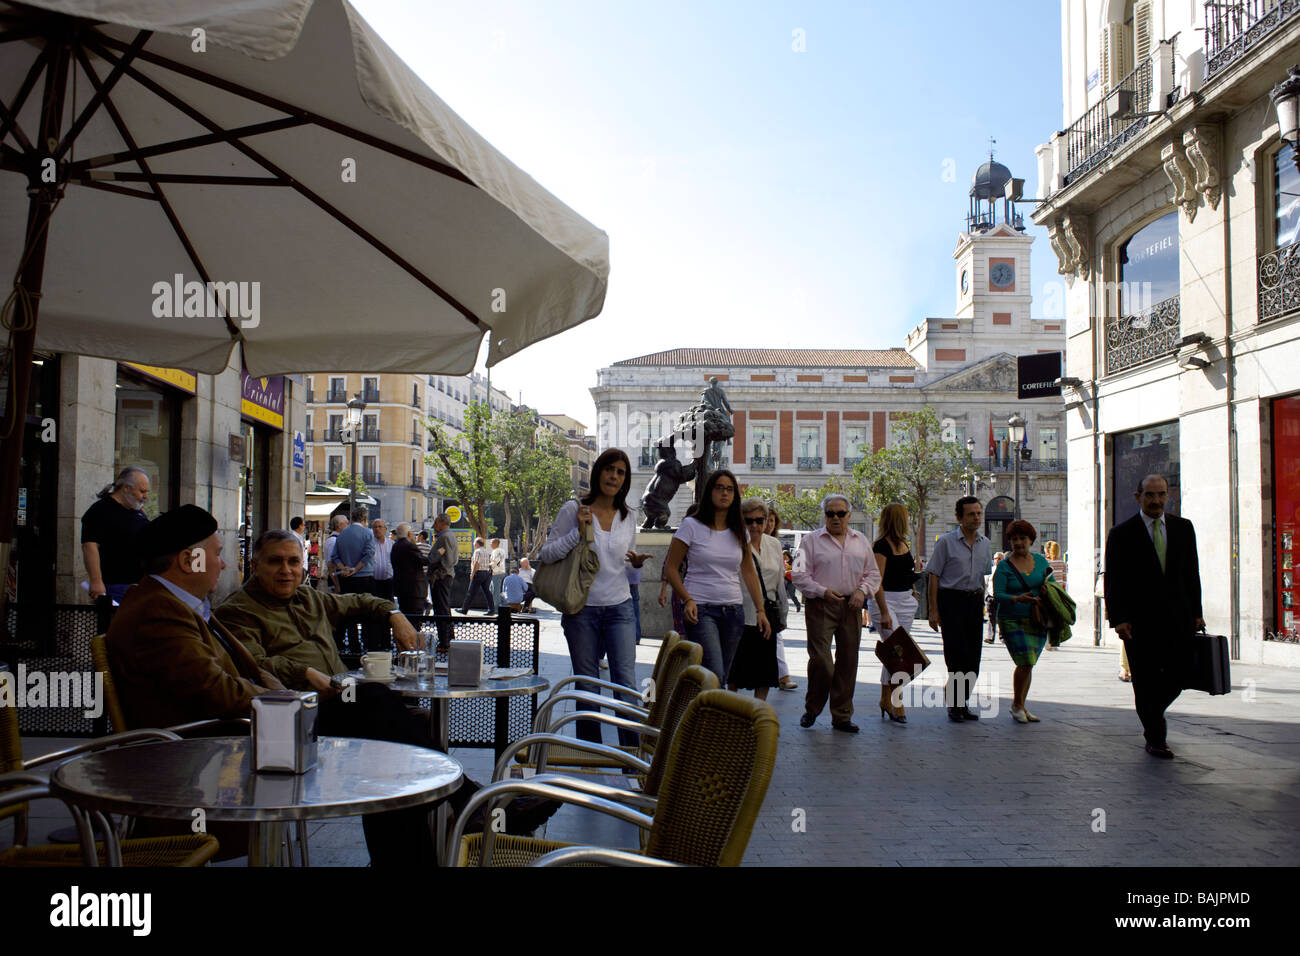 Pavement cafe, Calle Carmen, Plaza de la Puerta del Sol, Madrid, Spain, Europe, Stock Photo